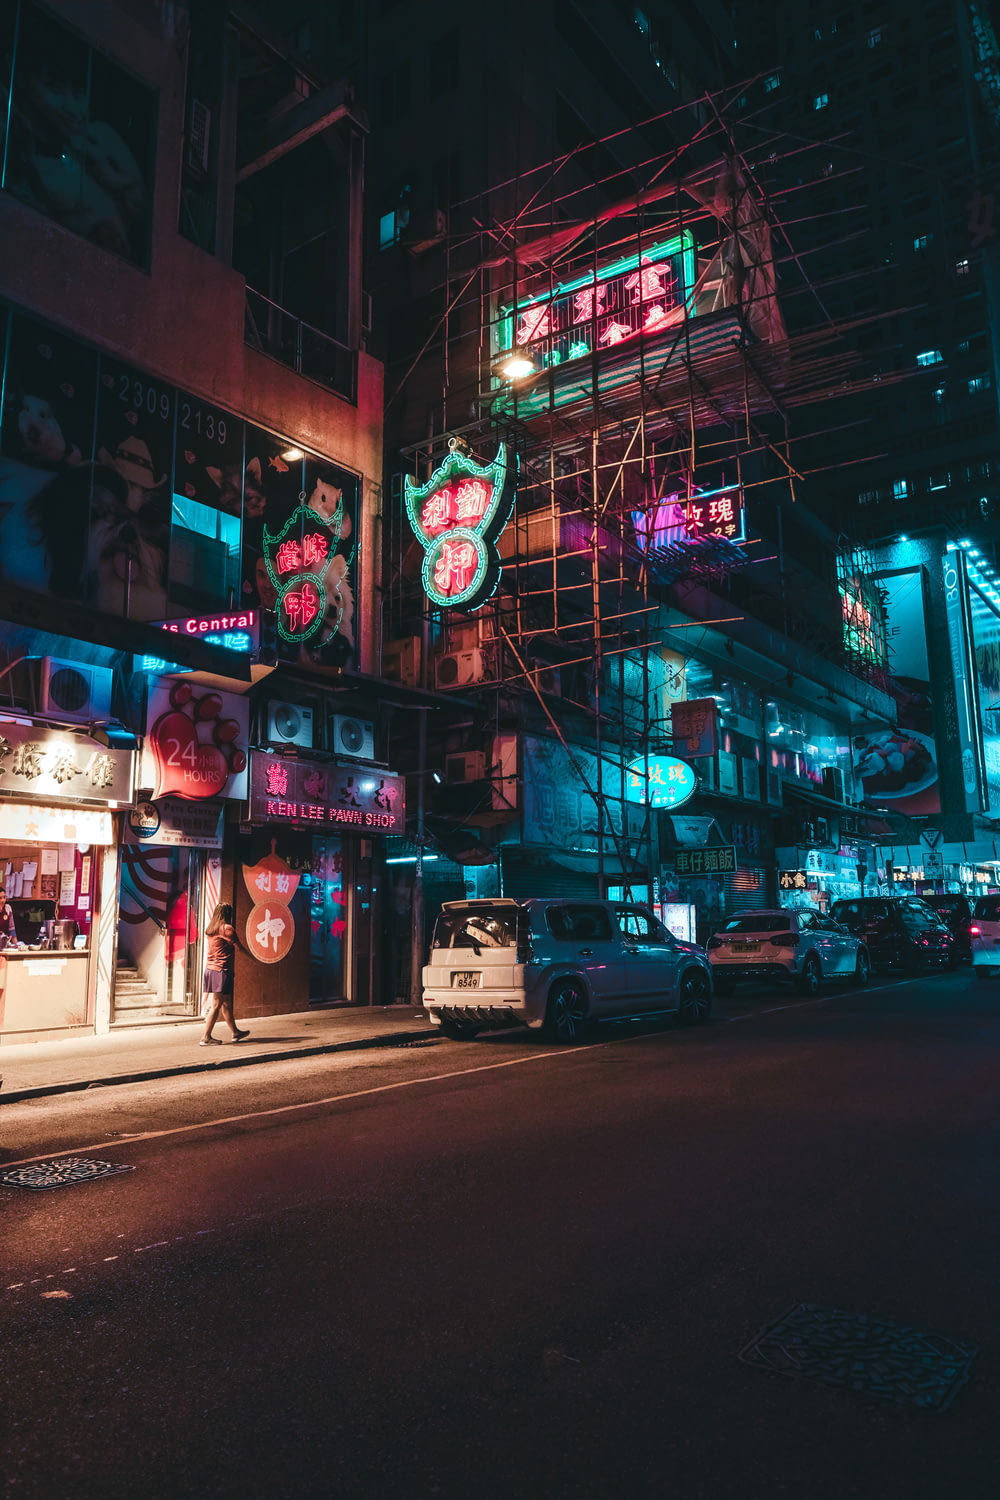 Une rue de la ville la nuit avec des enseignes au néon et des échafaudages